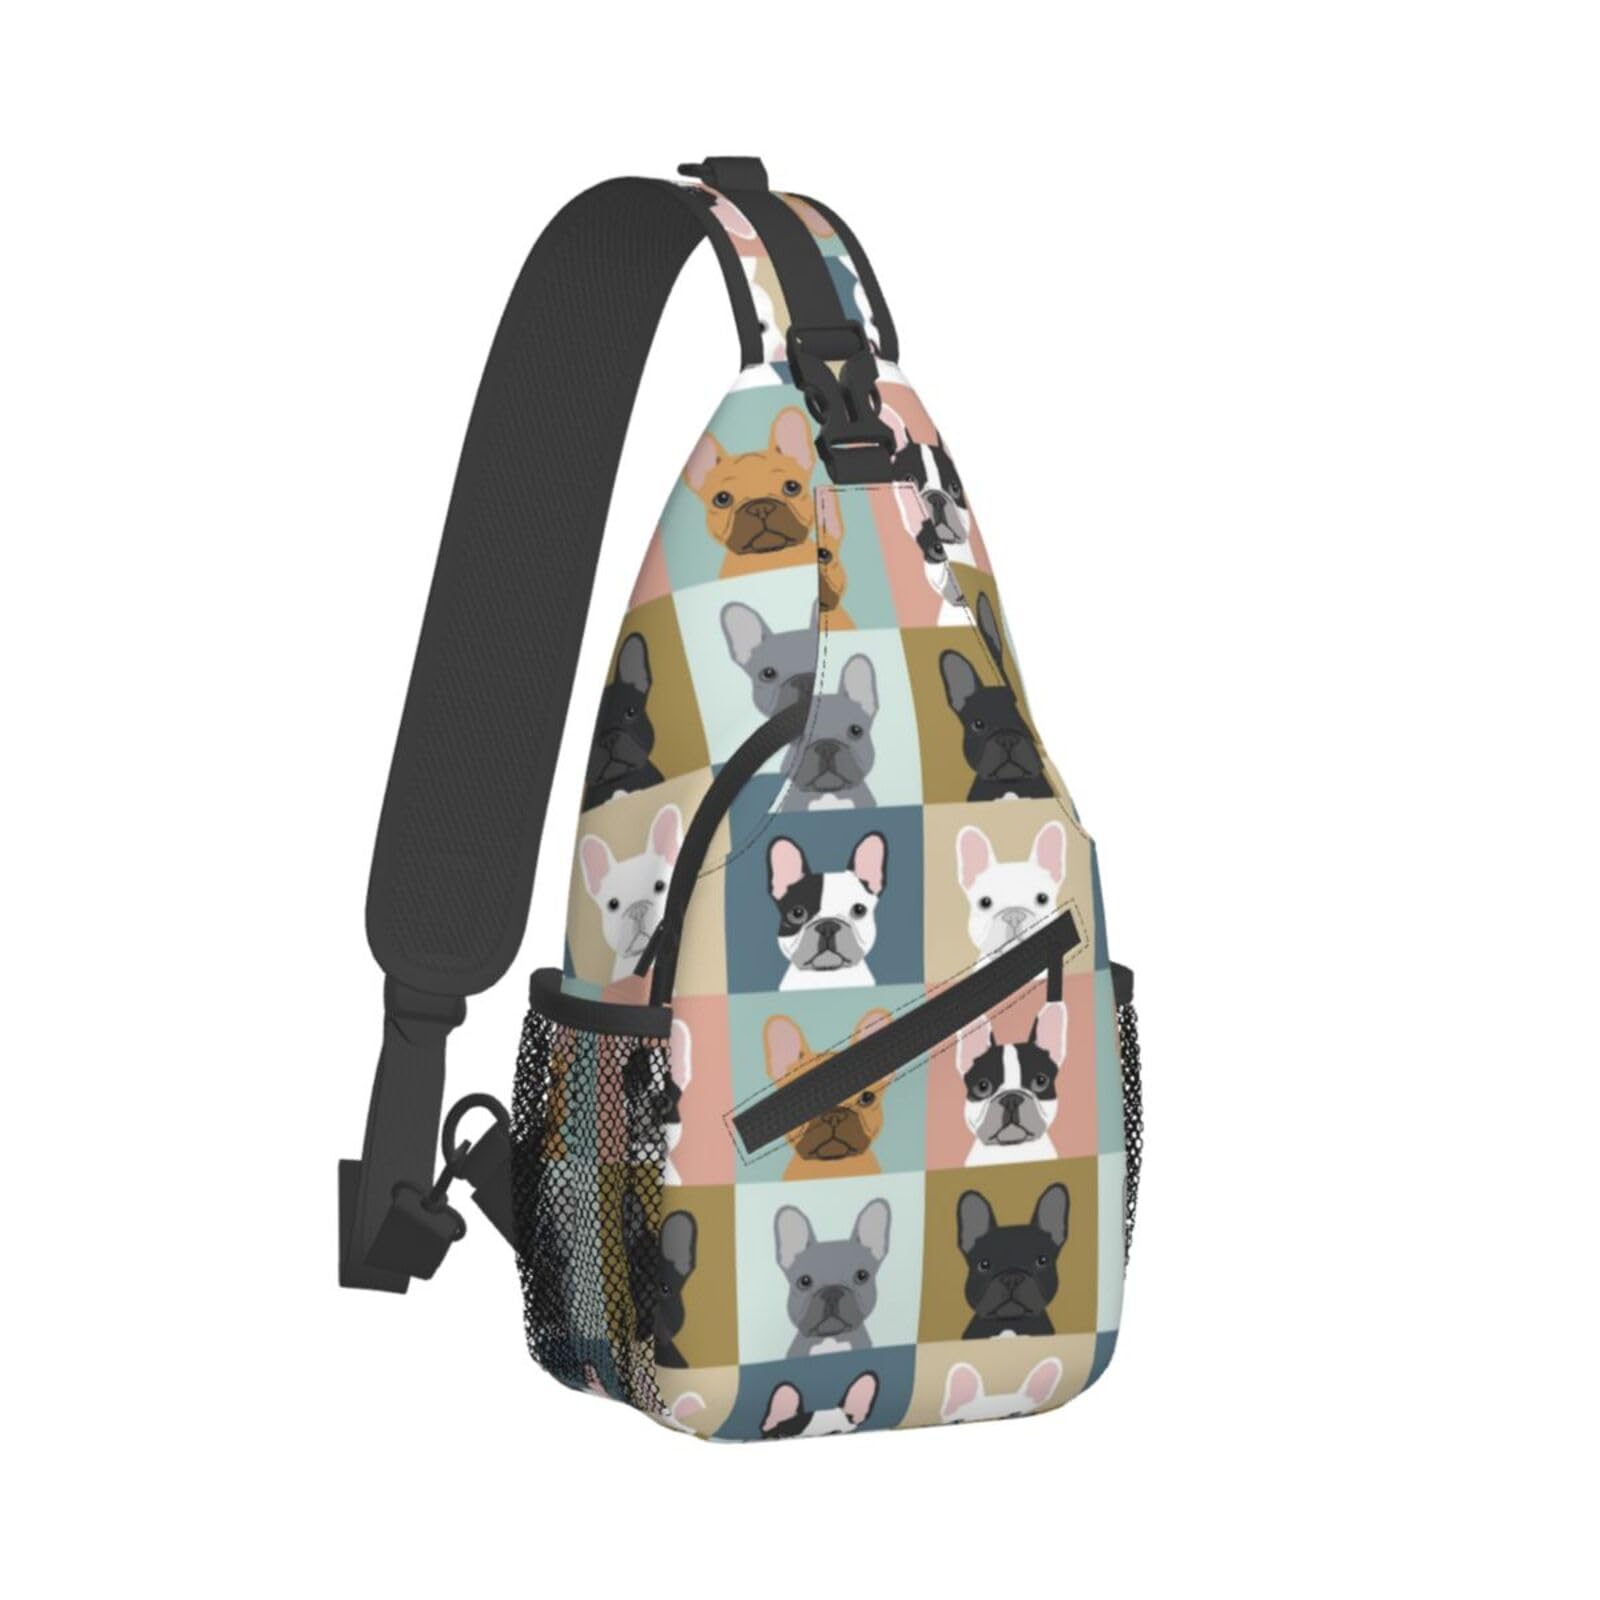 NOKOER French Bulldog Printed Crossbody Sling Backpack,Travel Hiking Chest Bag Daypack,Multipurpose Crossbody Shoulder Bag Small